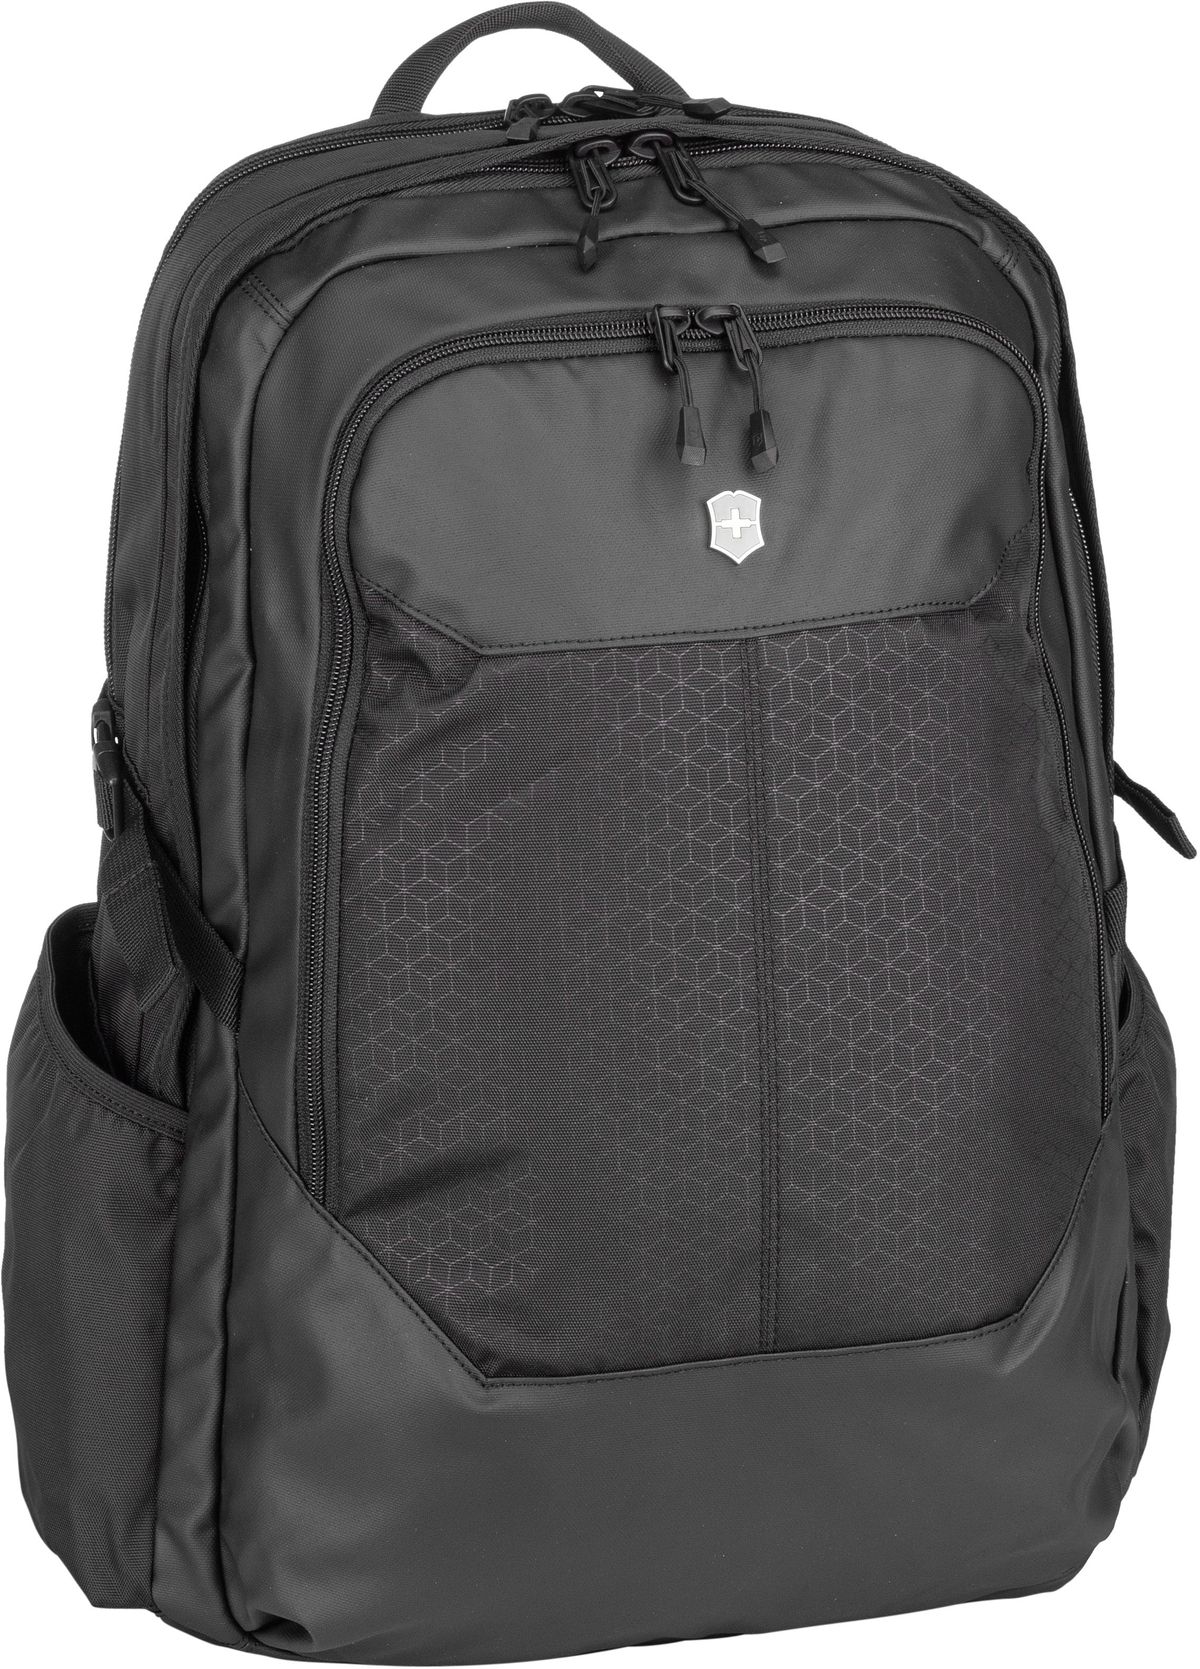 Victorinox Altmont Original Deluxe Laptop Backpack  in Schwarz (28 Liter), Rucksack / Backpack